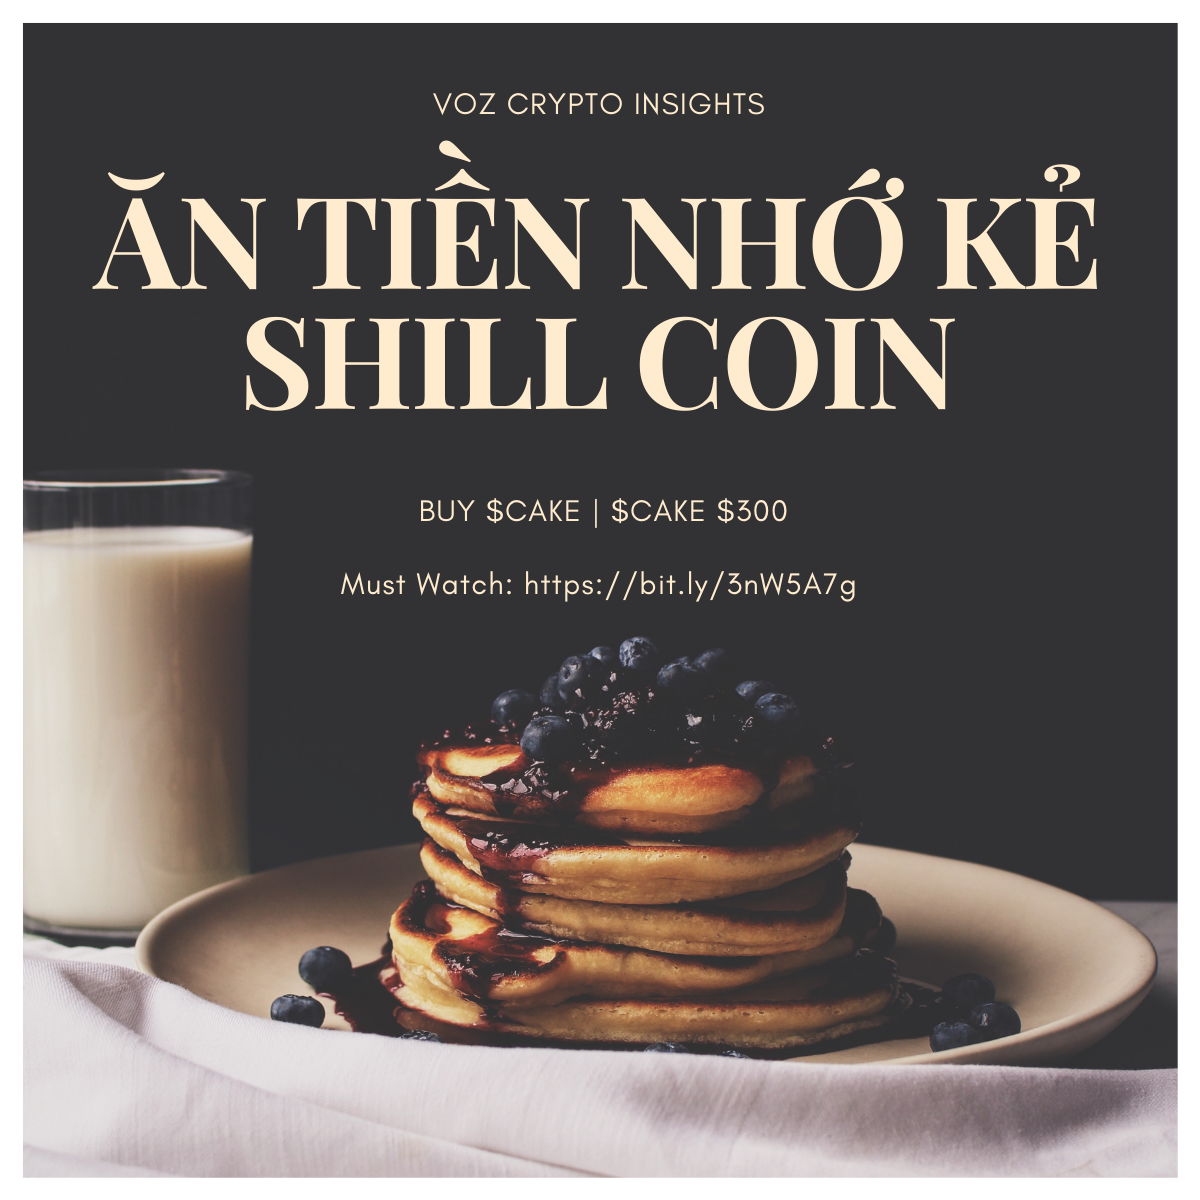 ăn tiền nhớ kẻ shill coin (2).png